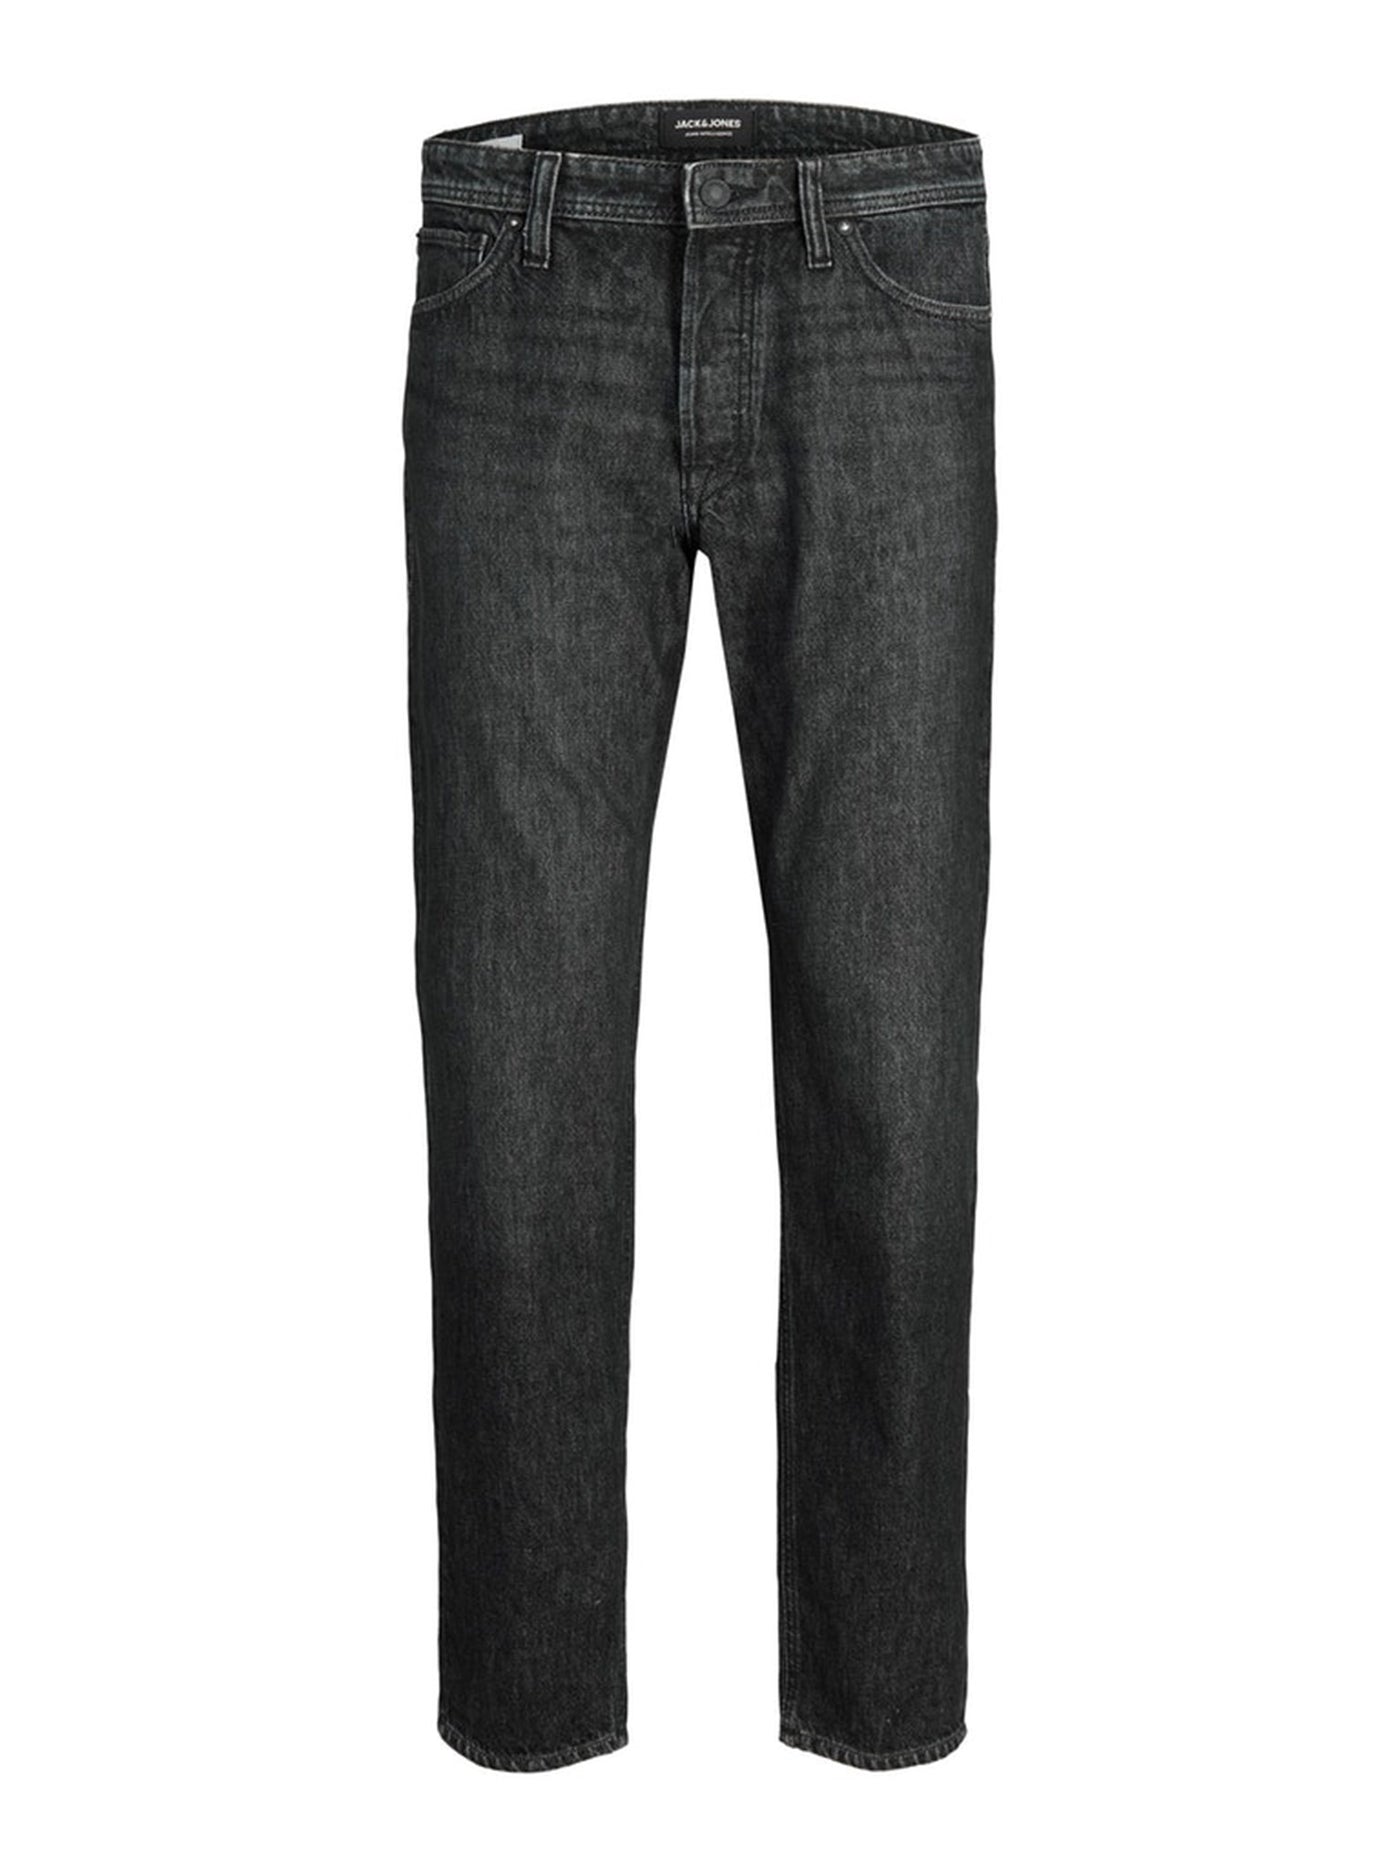 Chris Original Jeans MF993 - Black Denim - Jack & Jones - Svart 6